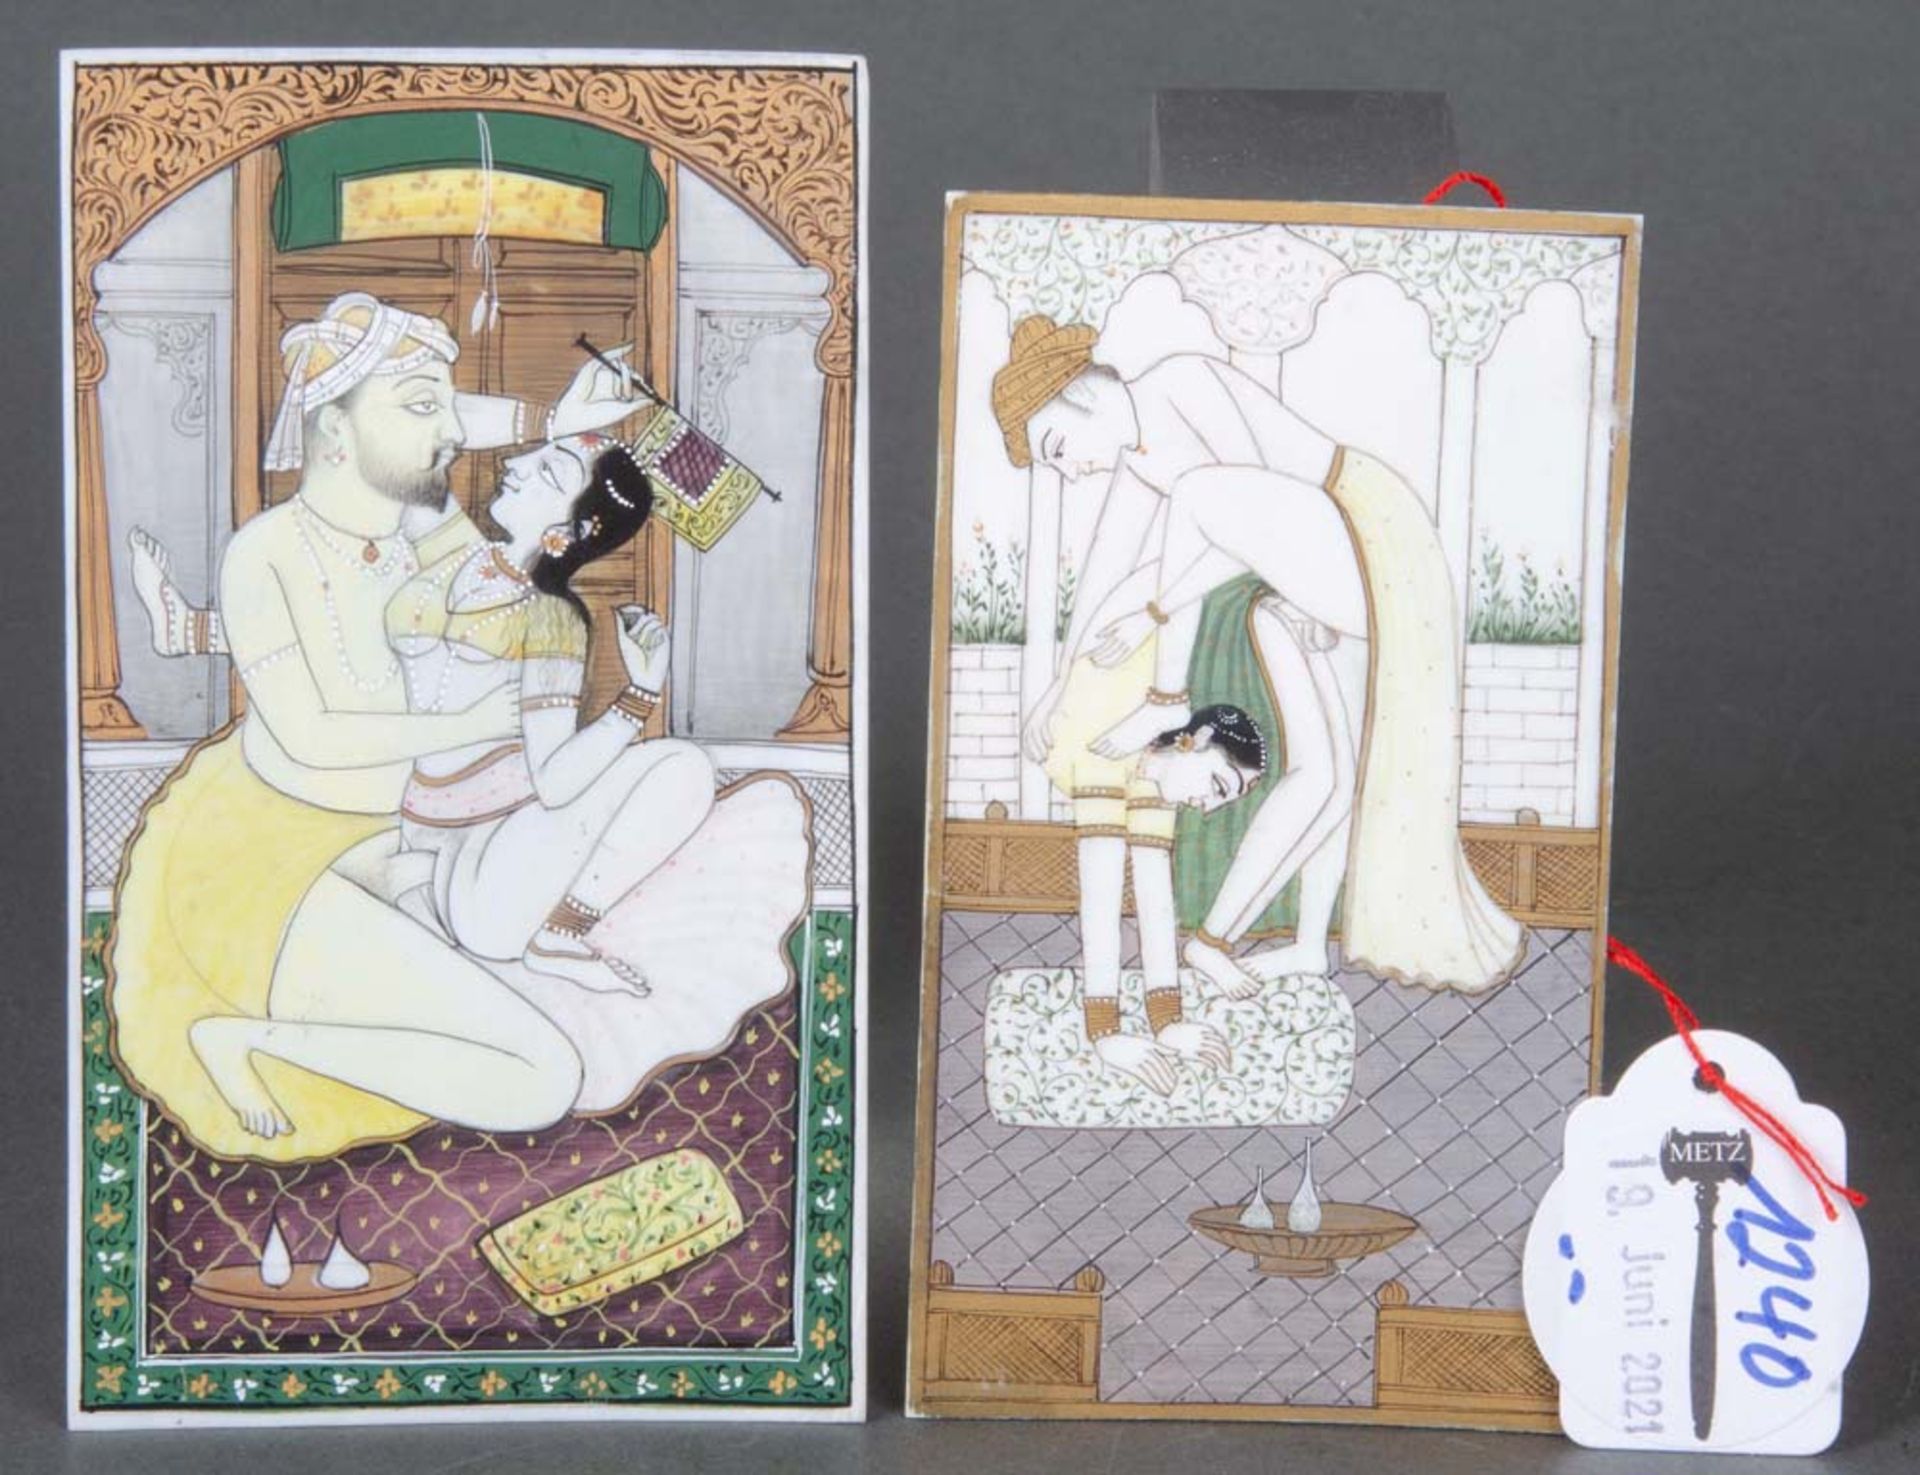 Zwei erotische Miniaturen. Indien. Elfenbein, bunt bemalt, 11,5 x 6,2 / 12,8 x 7,2 cm.